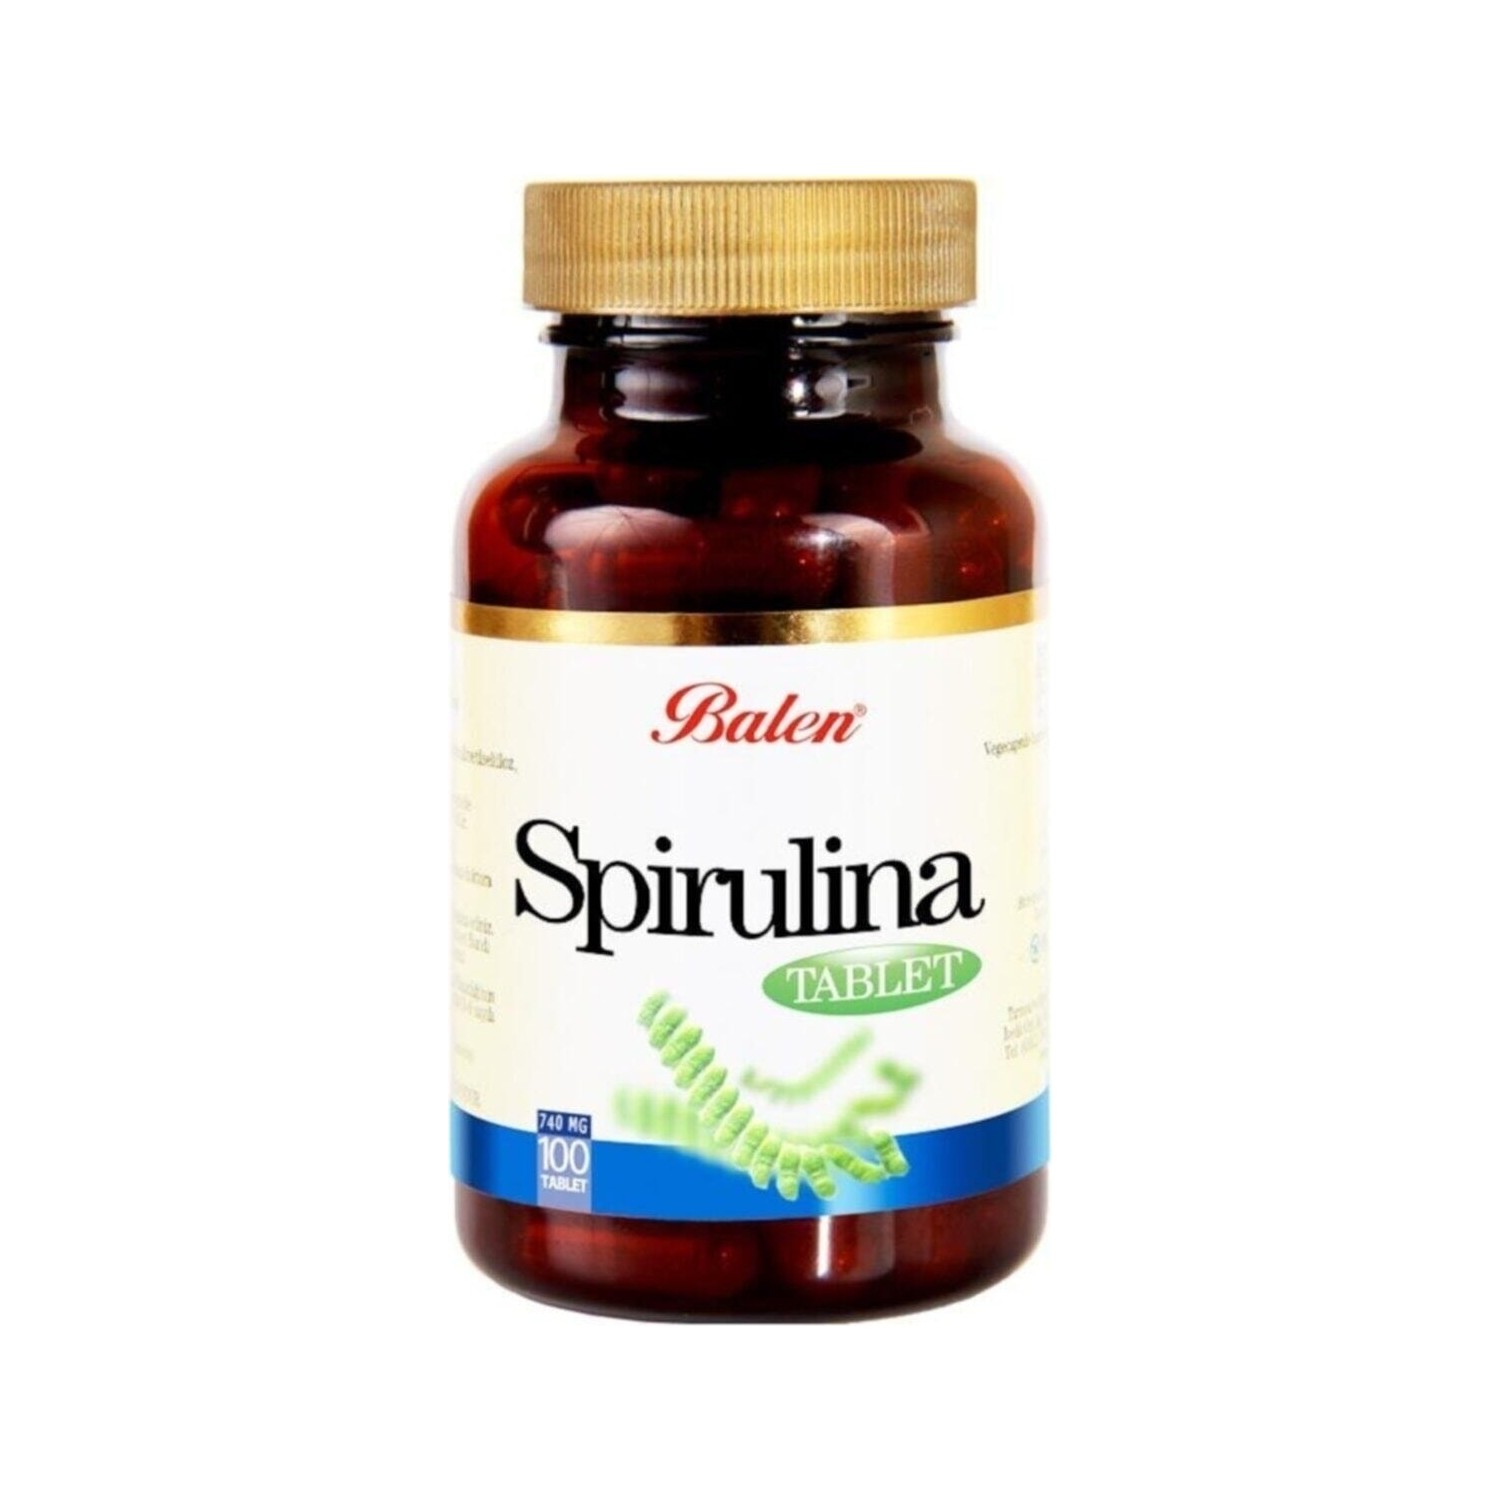 Пищевая добавка Balen Spirulina 740 мг, 100 таблеток пищевая добавка balen spirulina 740 мг 100 таблеток